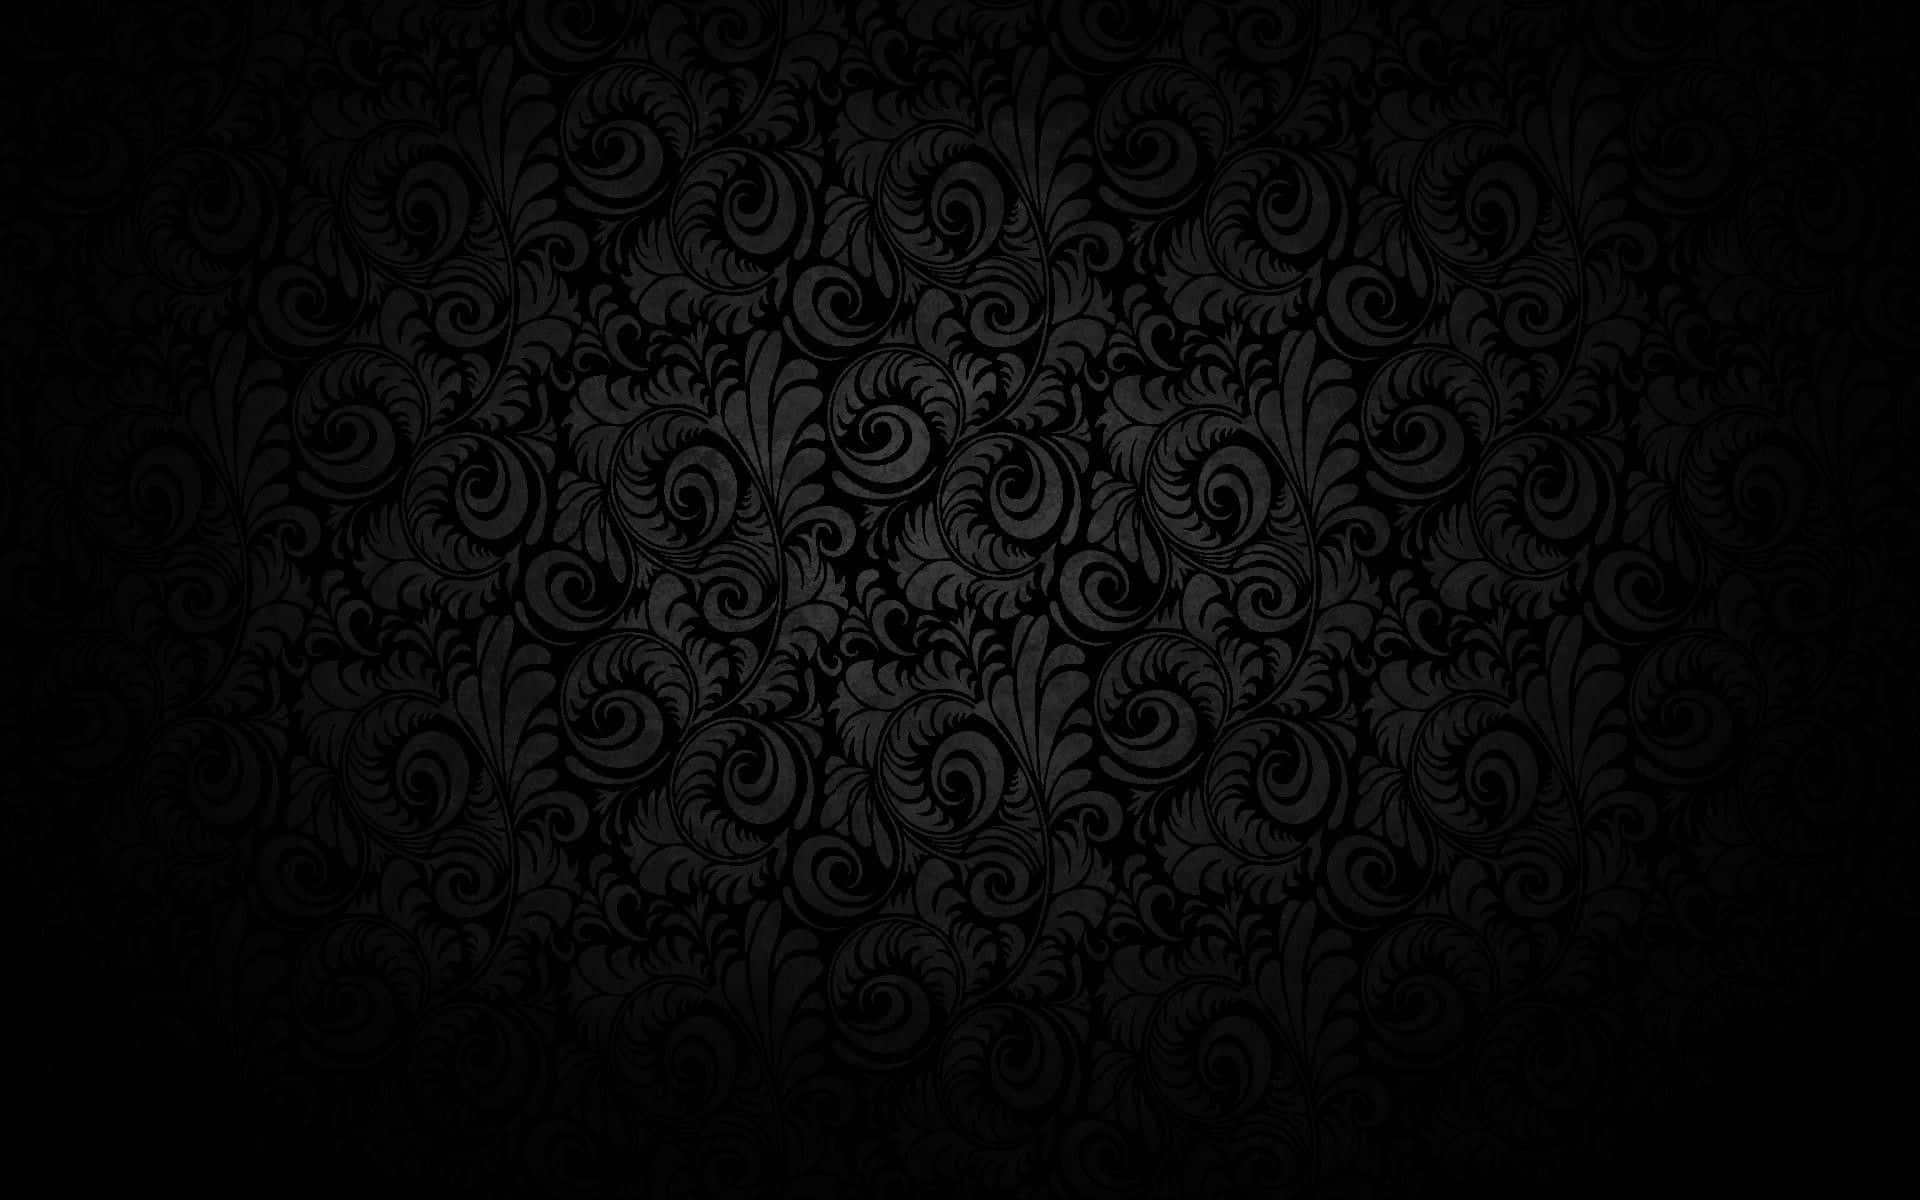 Dark and Mystical Gothic Background